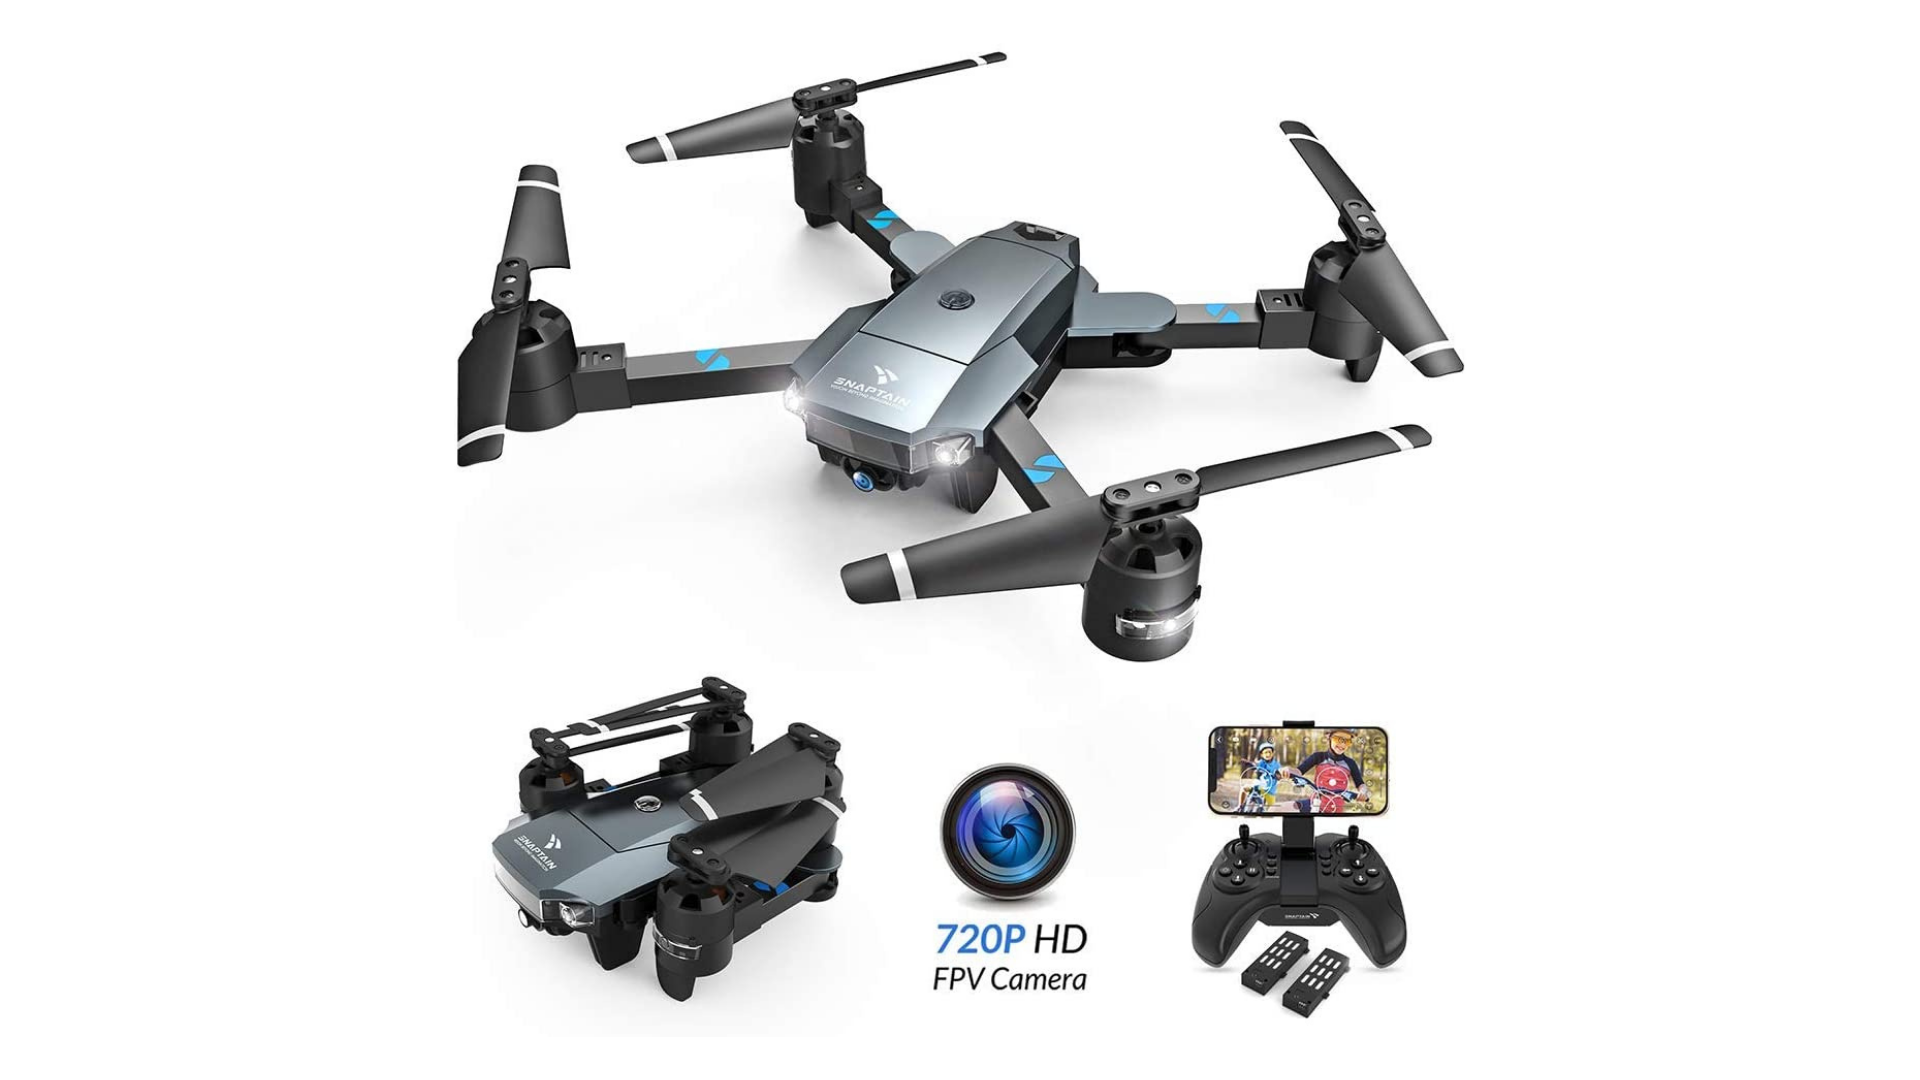 best drones for kids